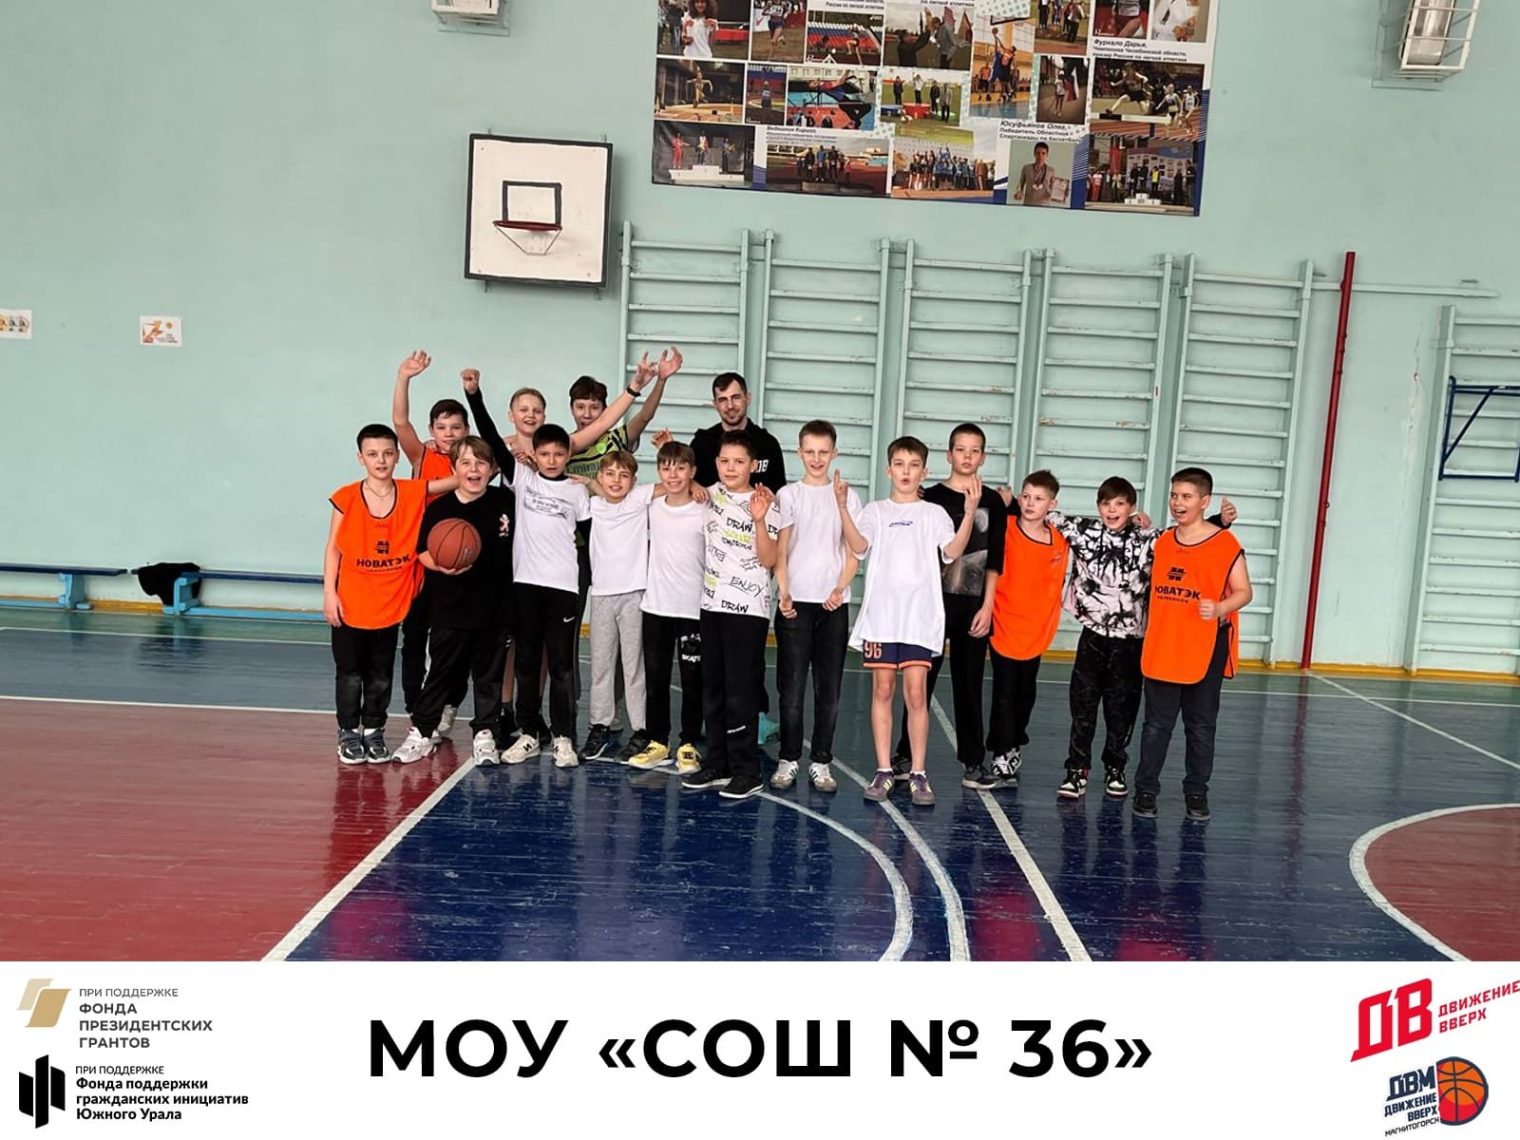 Движение вверх. В Магнитогорске проводятся баскетбольные тренировки для школьников